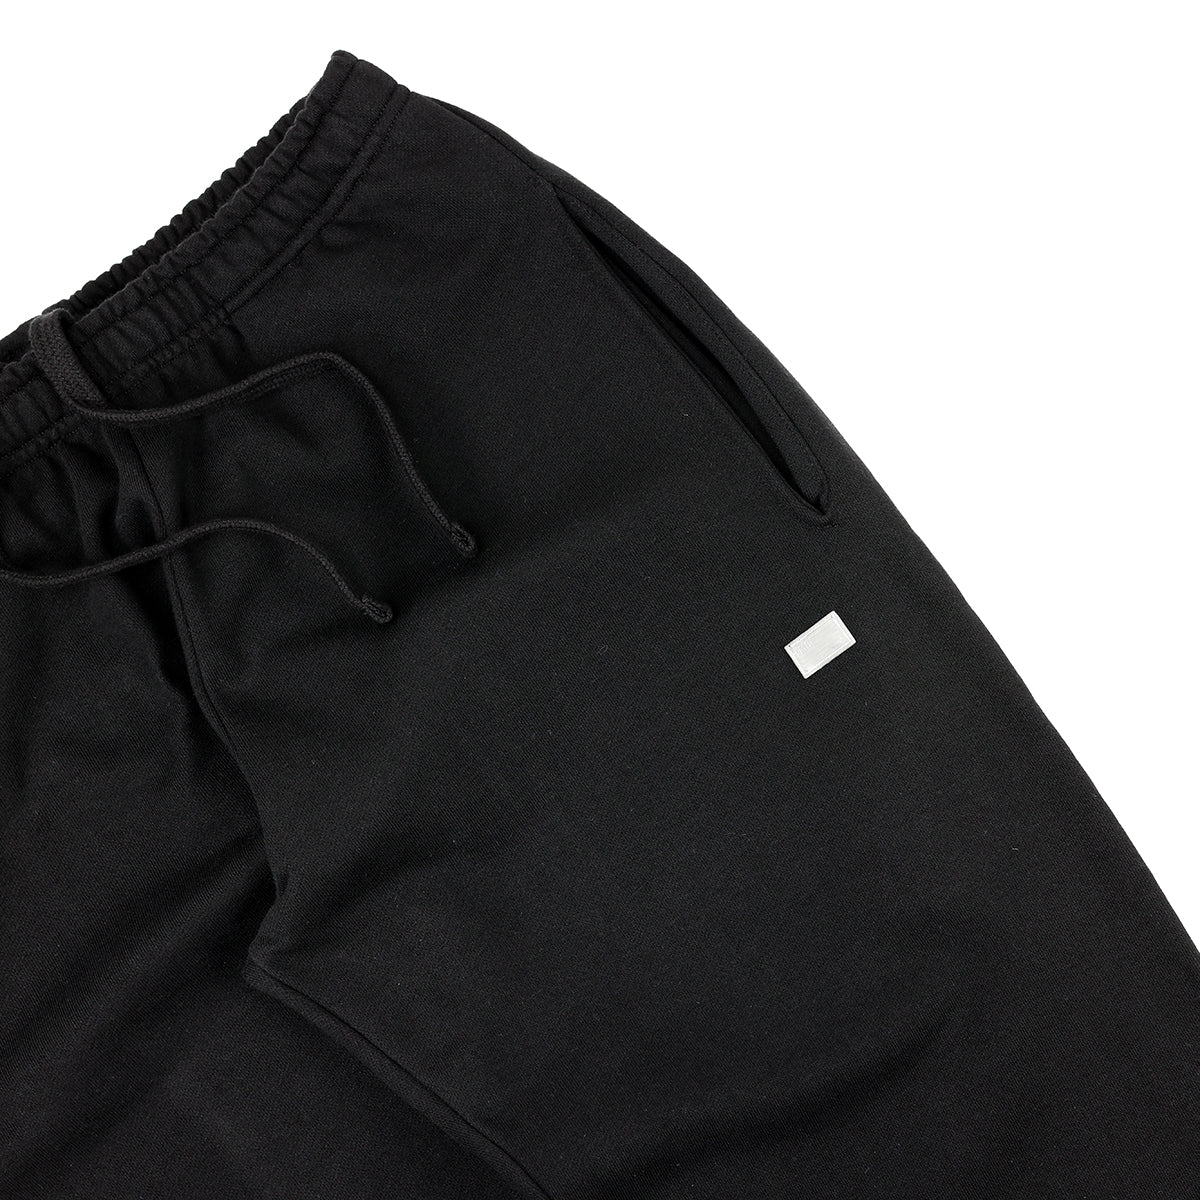 Crenshaw Pants - Black - Detail